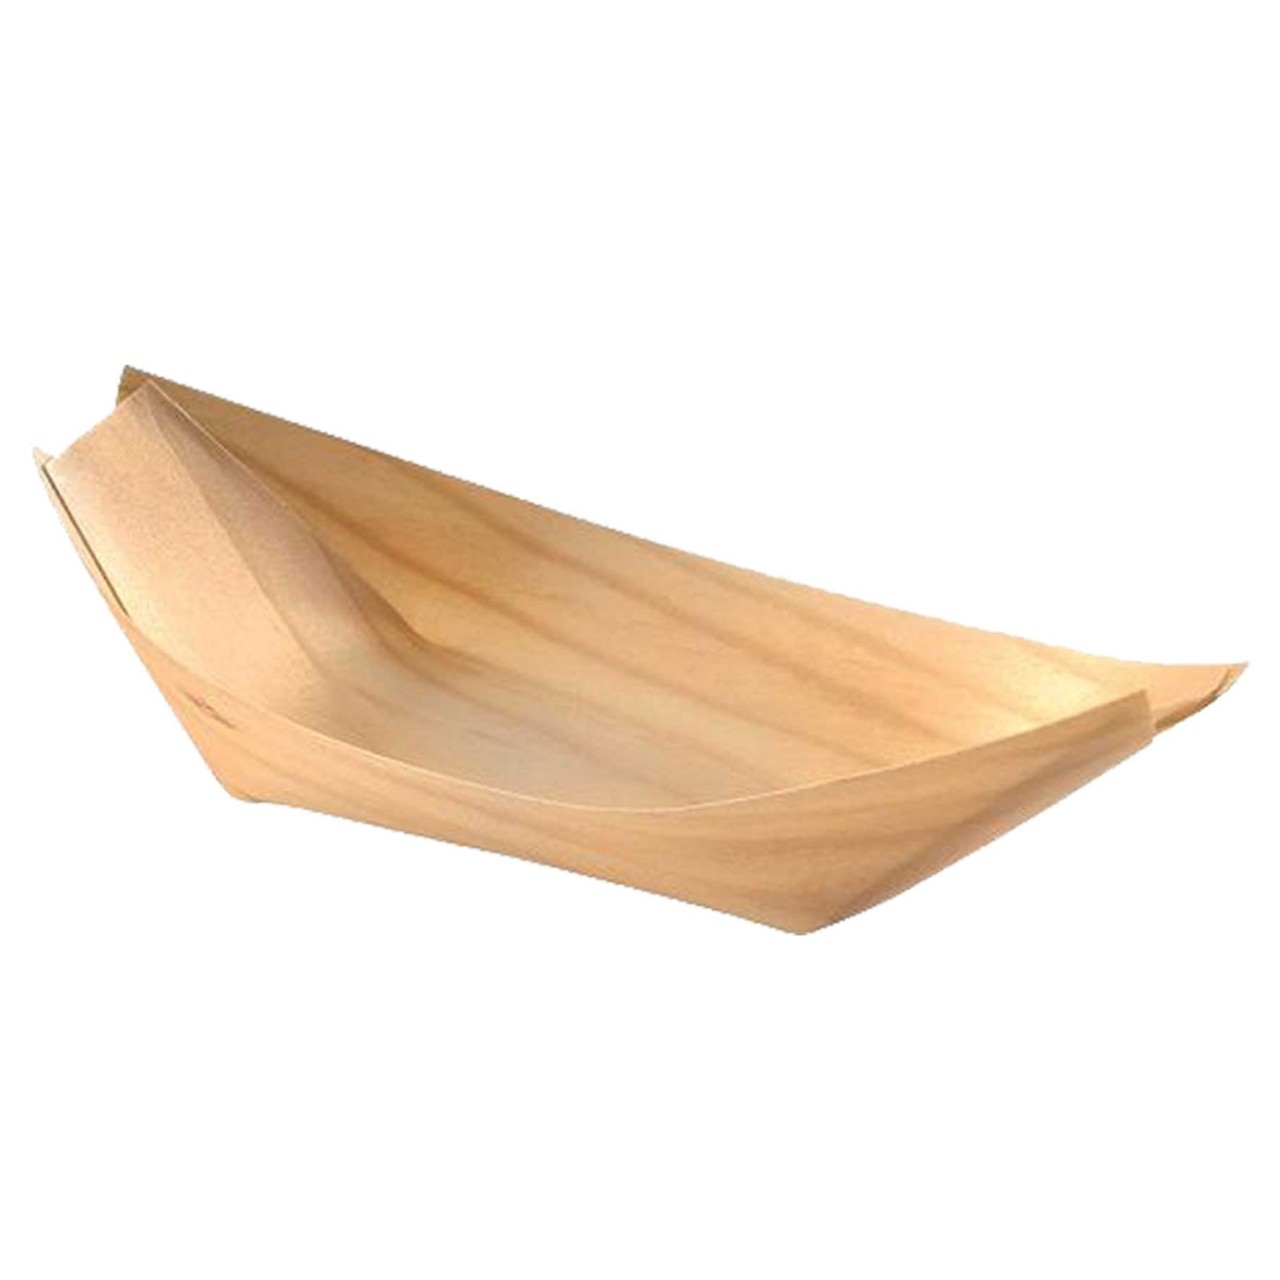 Holz-Schiffchen, groß, 22cm, 100 Stück/Packung